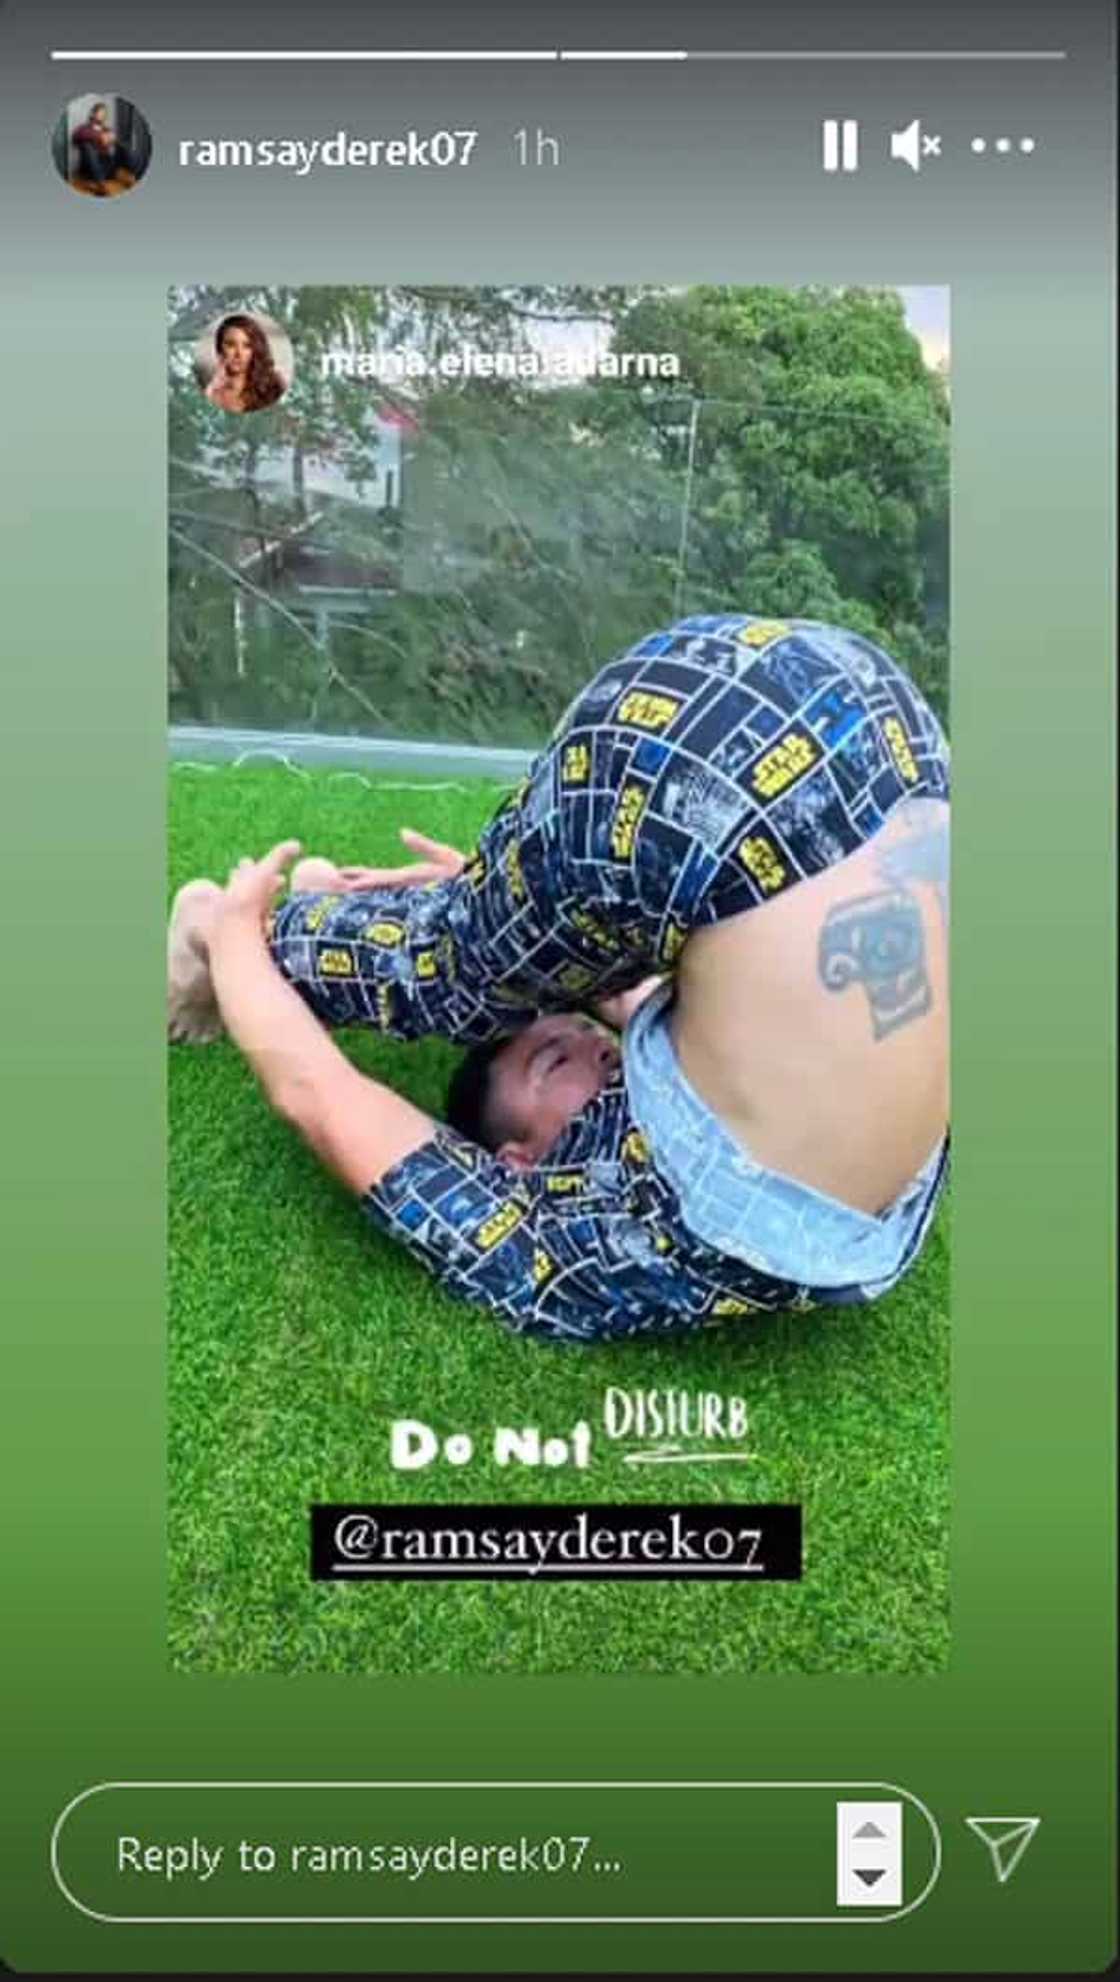 Derek Ramsay posts "tumbling" photo on the grass while wearing pajamas